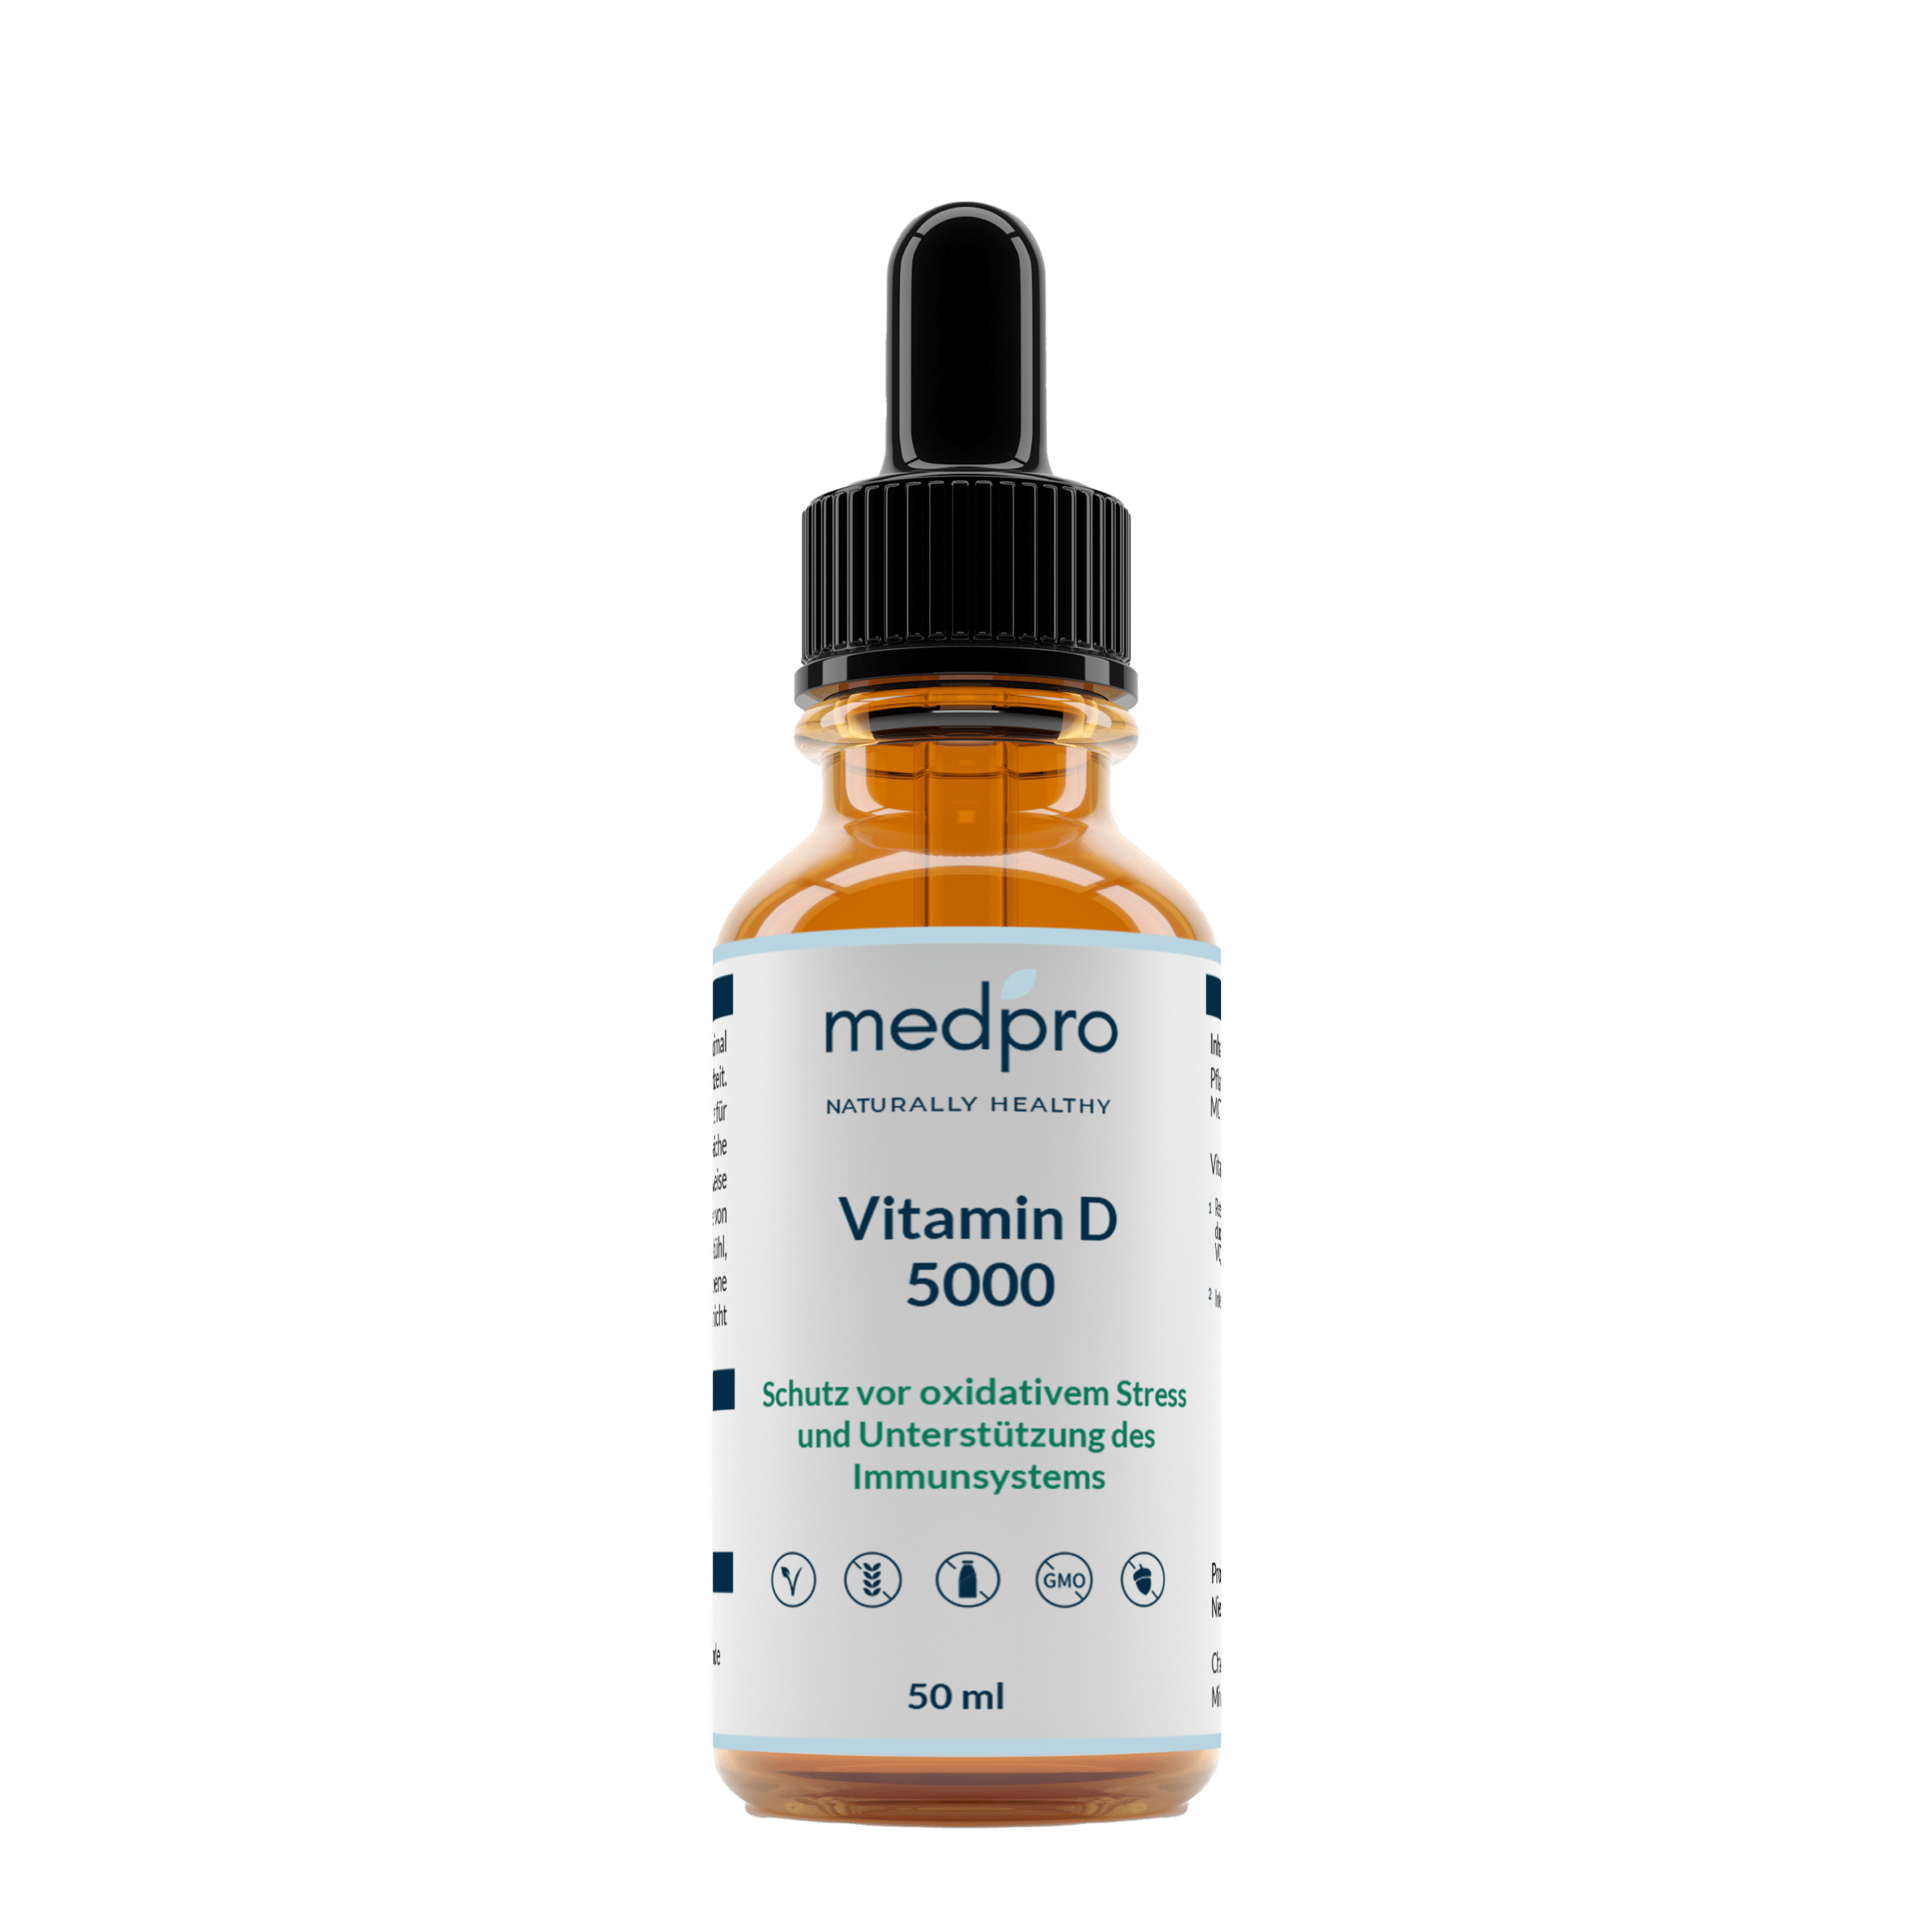 Vitamin D Produktflasche